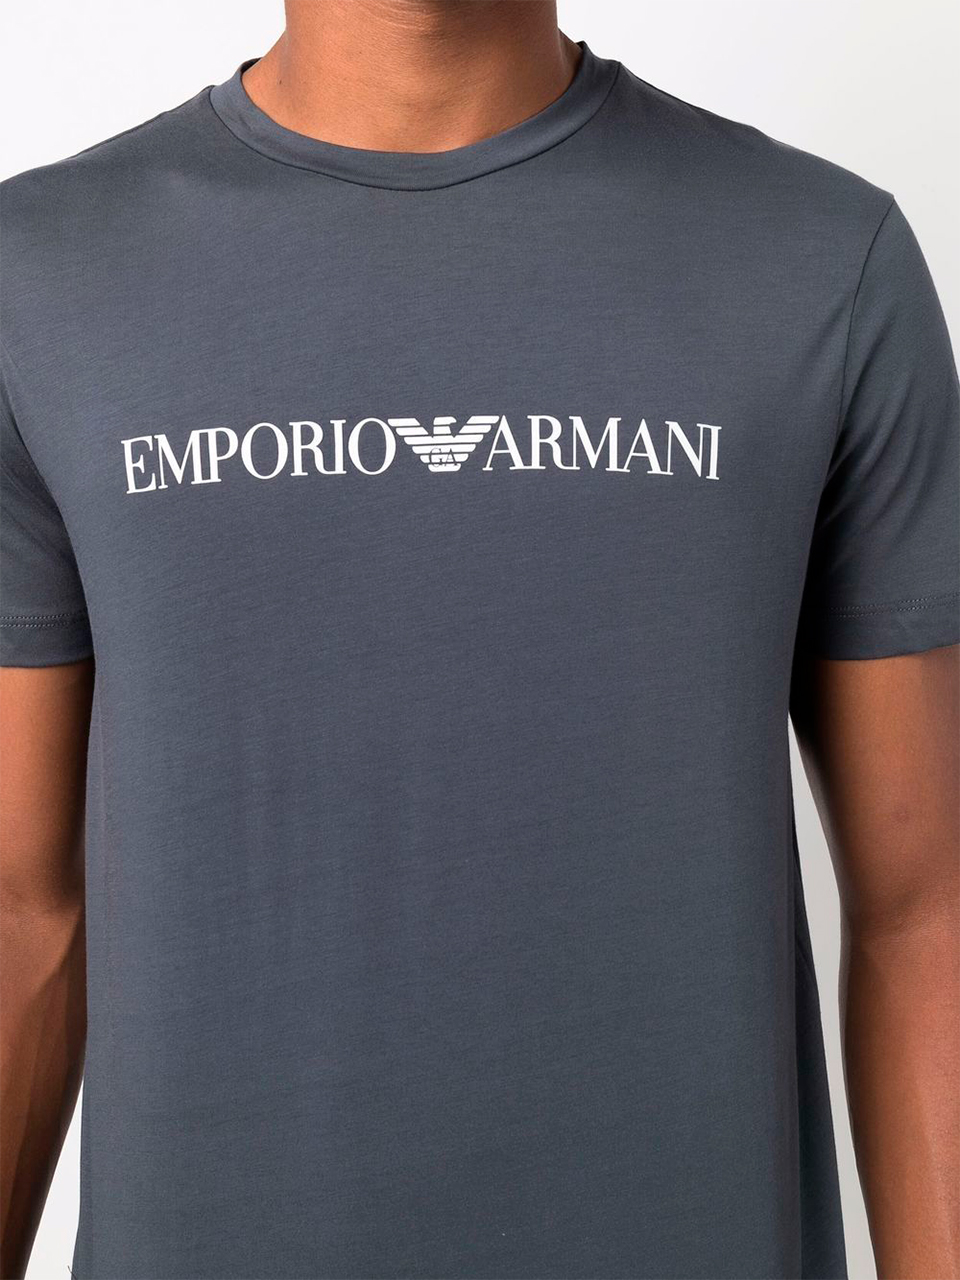 Imagem de: Camiseta Emporio Armani Cinza com Logo Branca